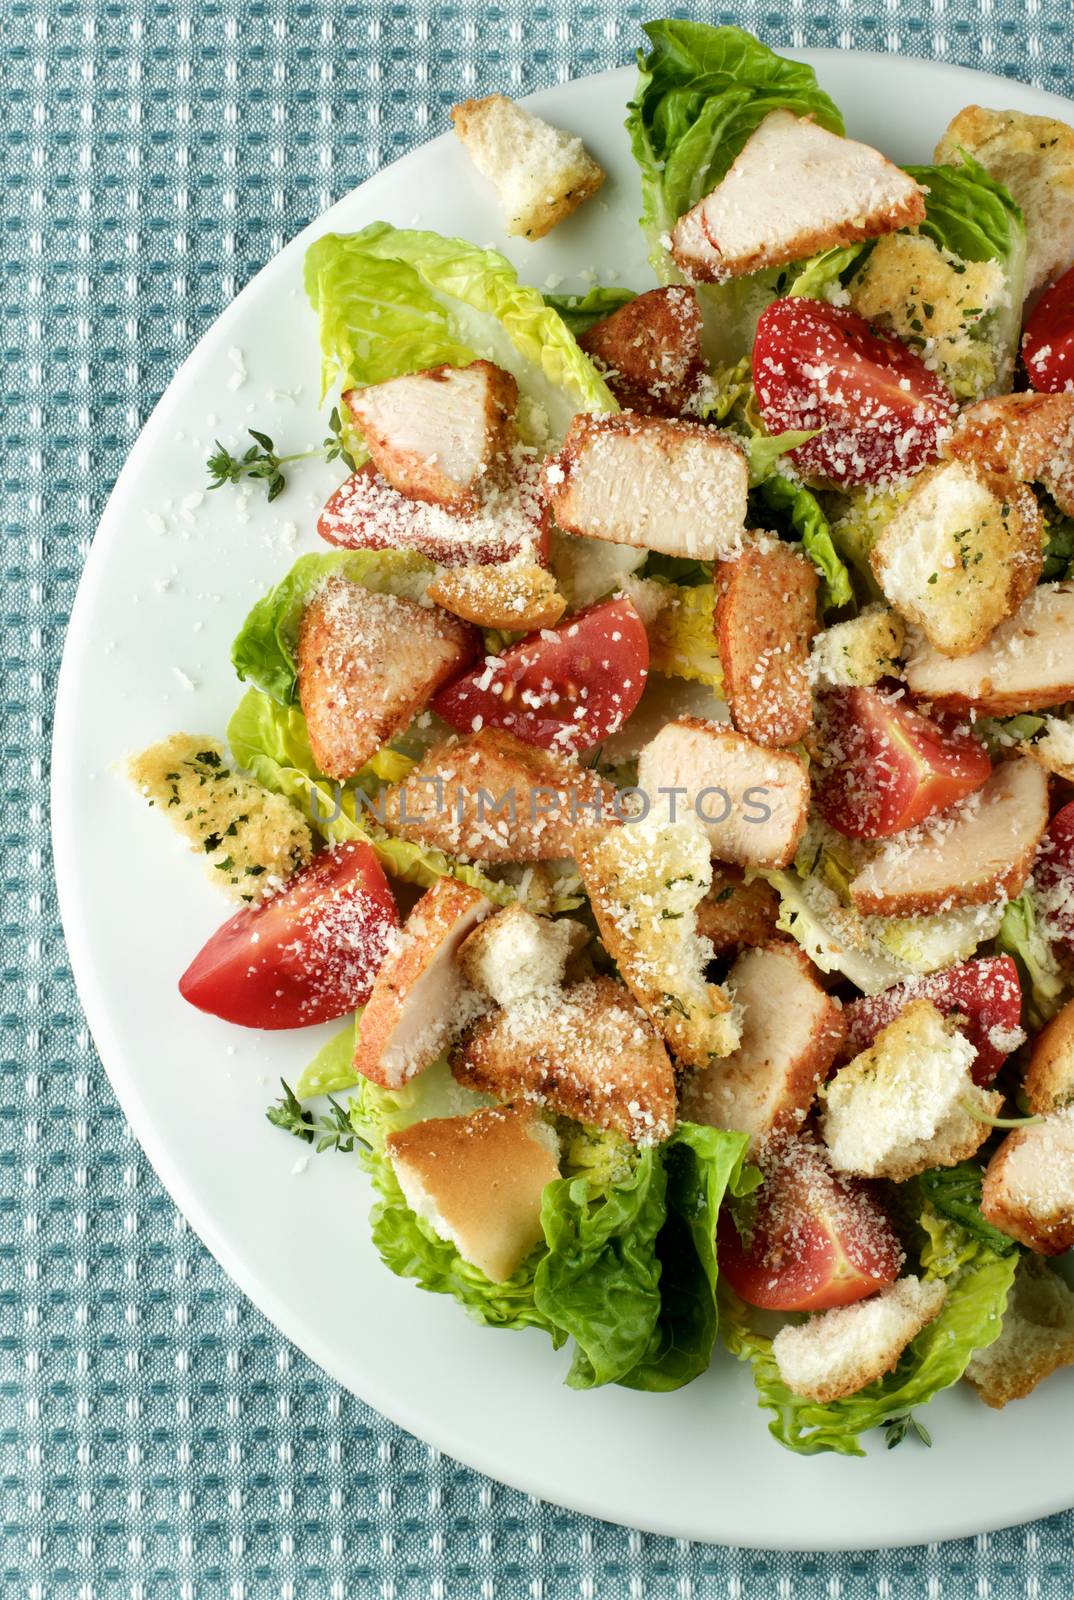 Delicious Caesar Salad by zhekos